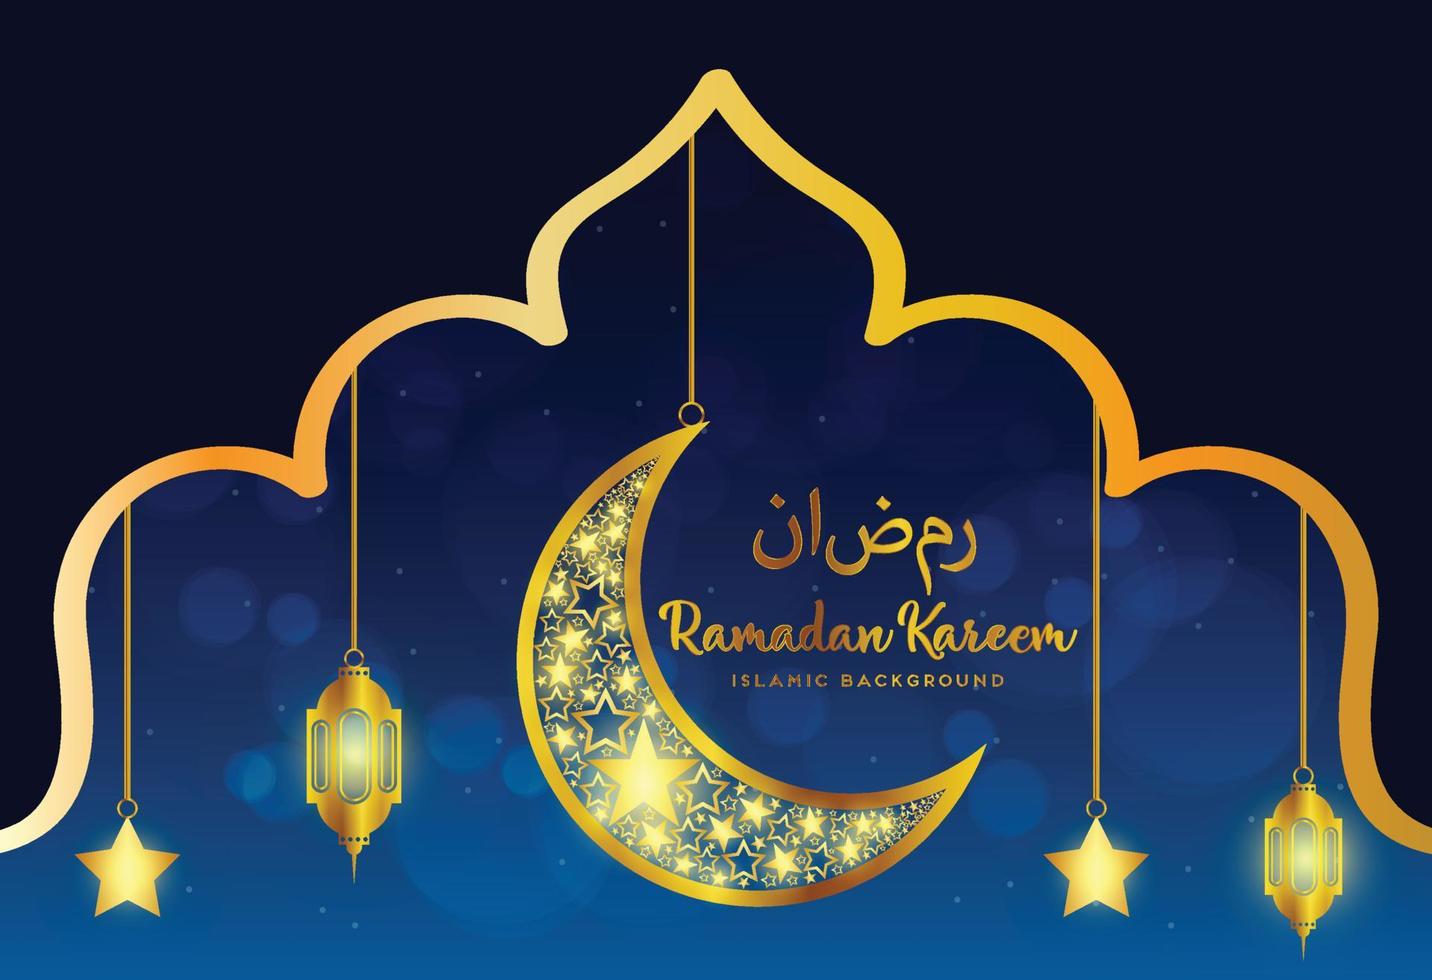 sfondo ramadan kareem, illustrazione con lanterne arabe e mezzaluna ornata d'oro, su sfondo stellato con nuvole. eps 10 contiene trasparenza. vettore